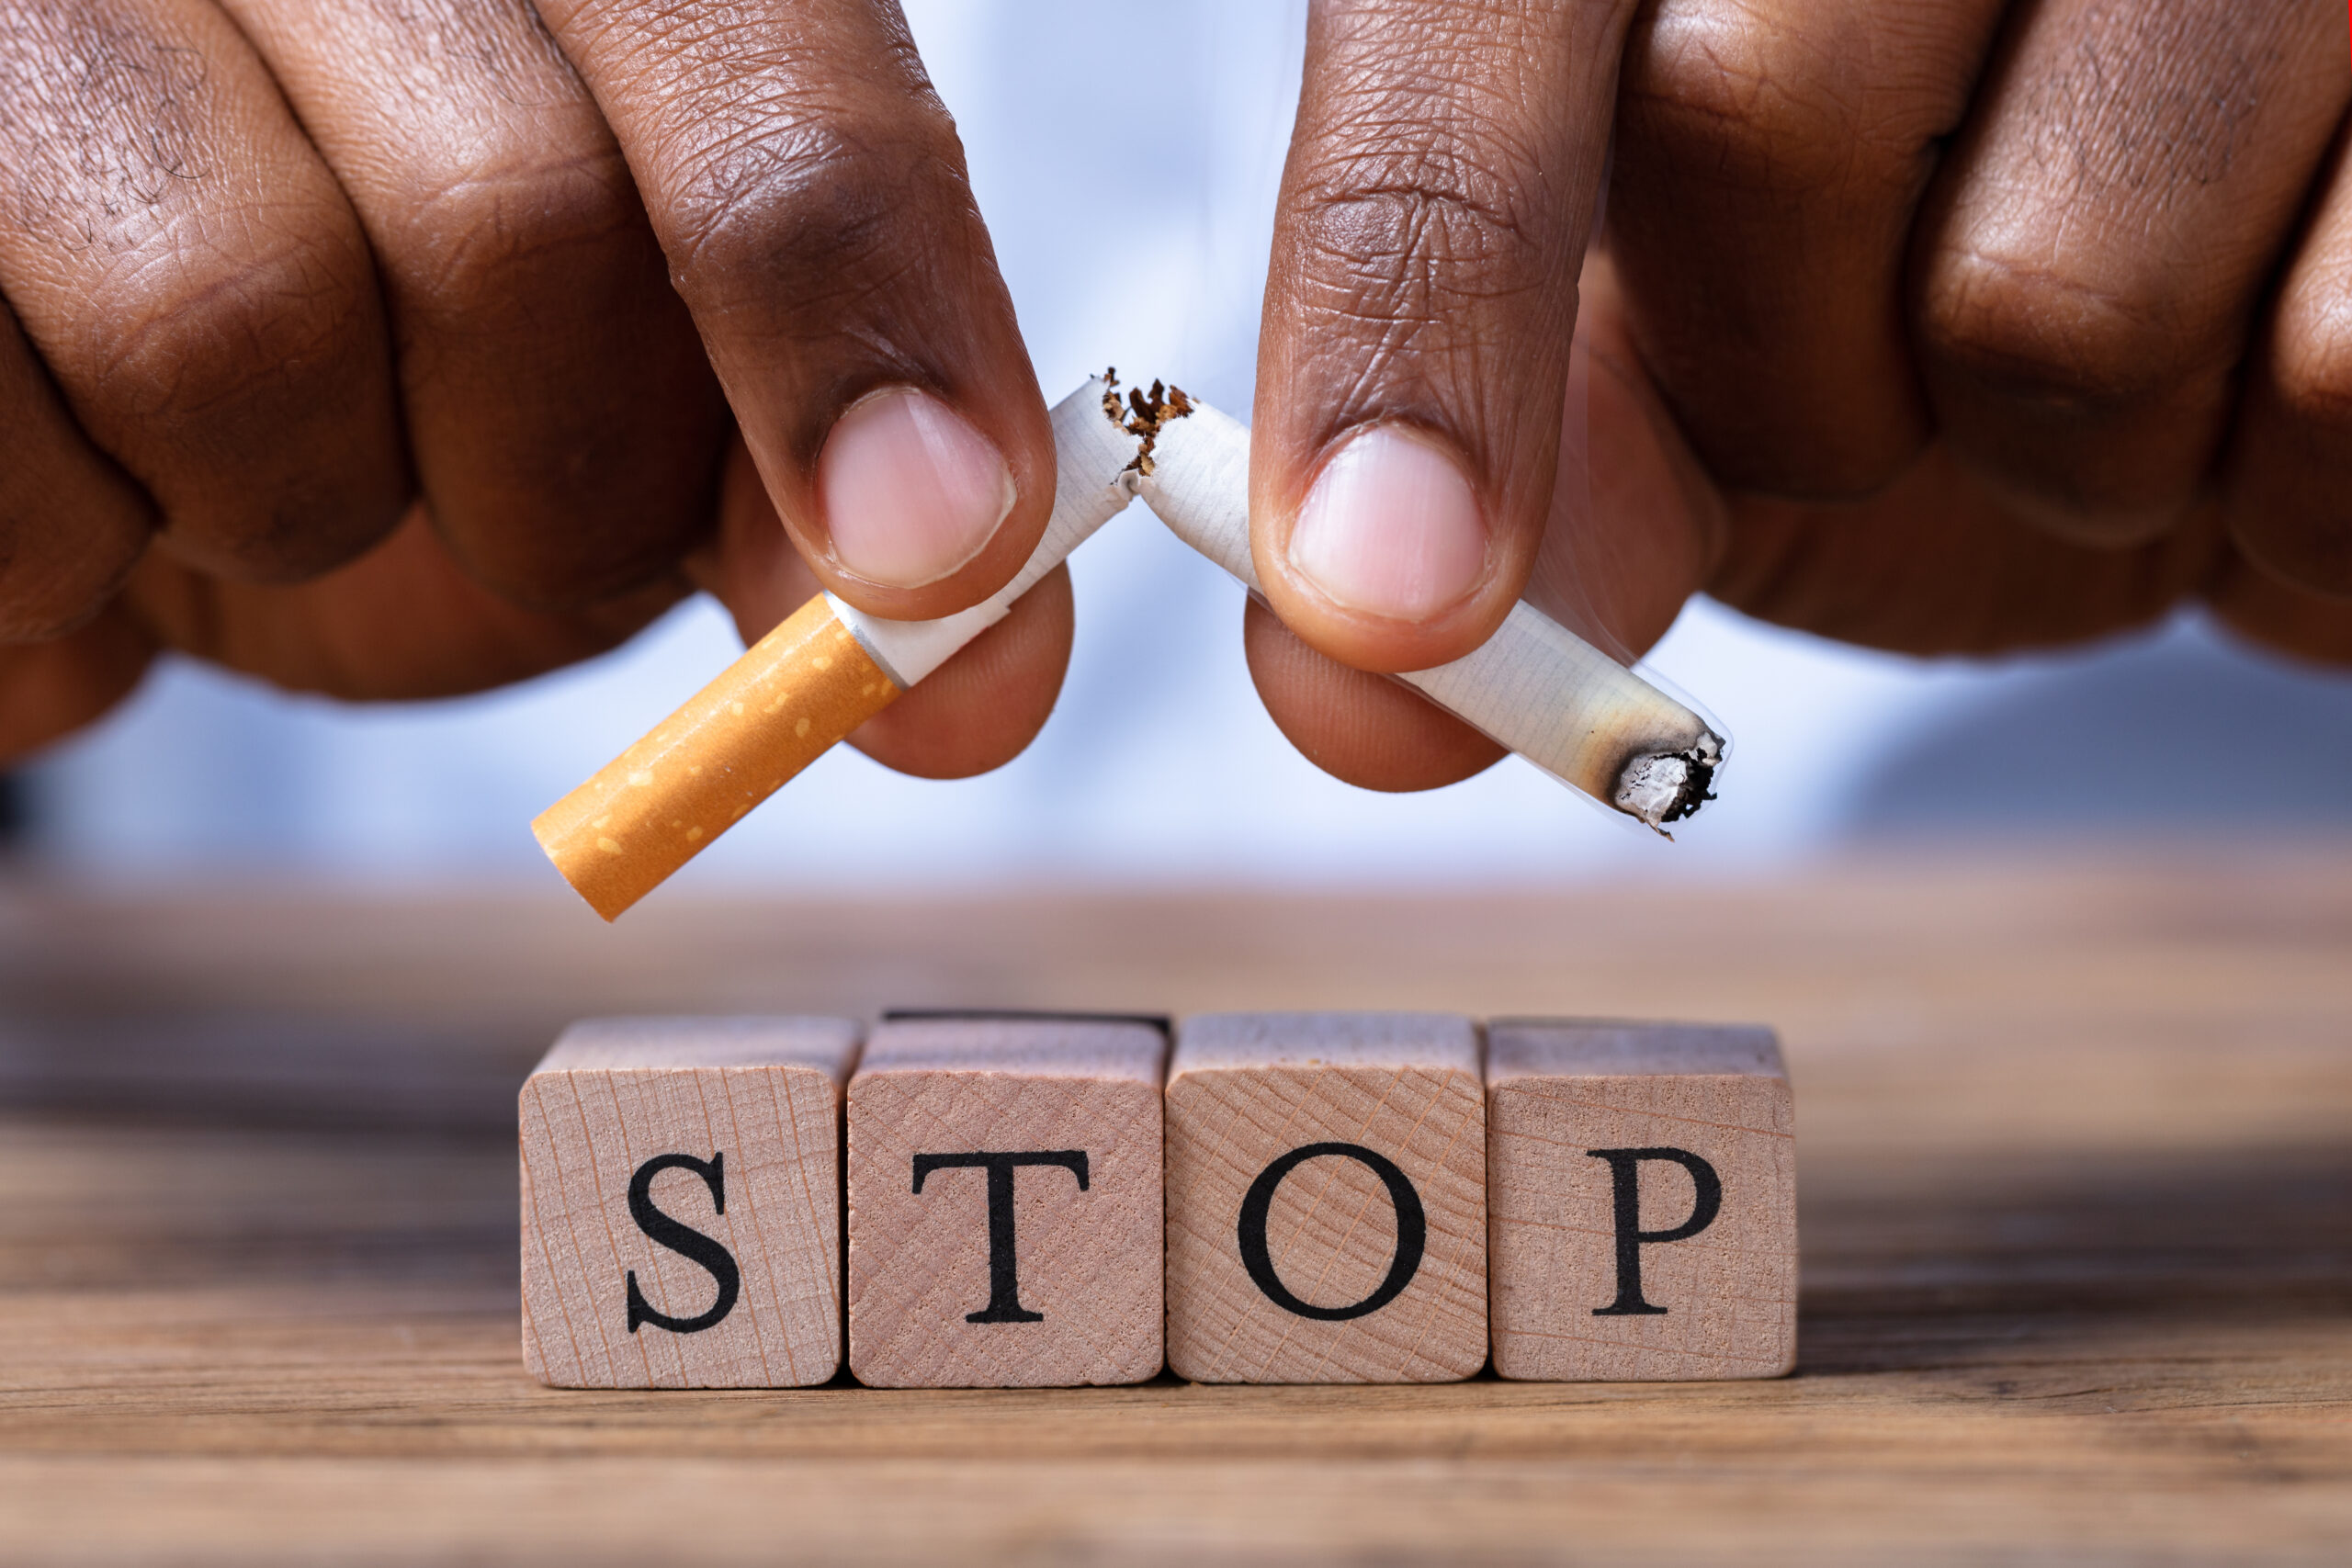 O alternatywach dla papierosa z okazji Światowego Dnia Rzucania Palenia Tytoniu